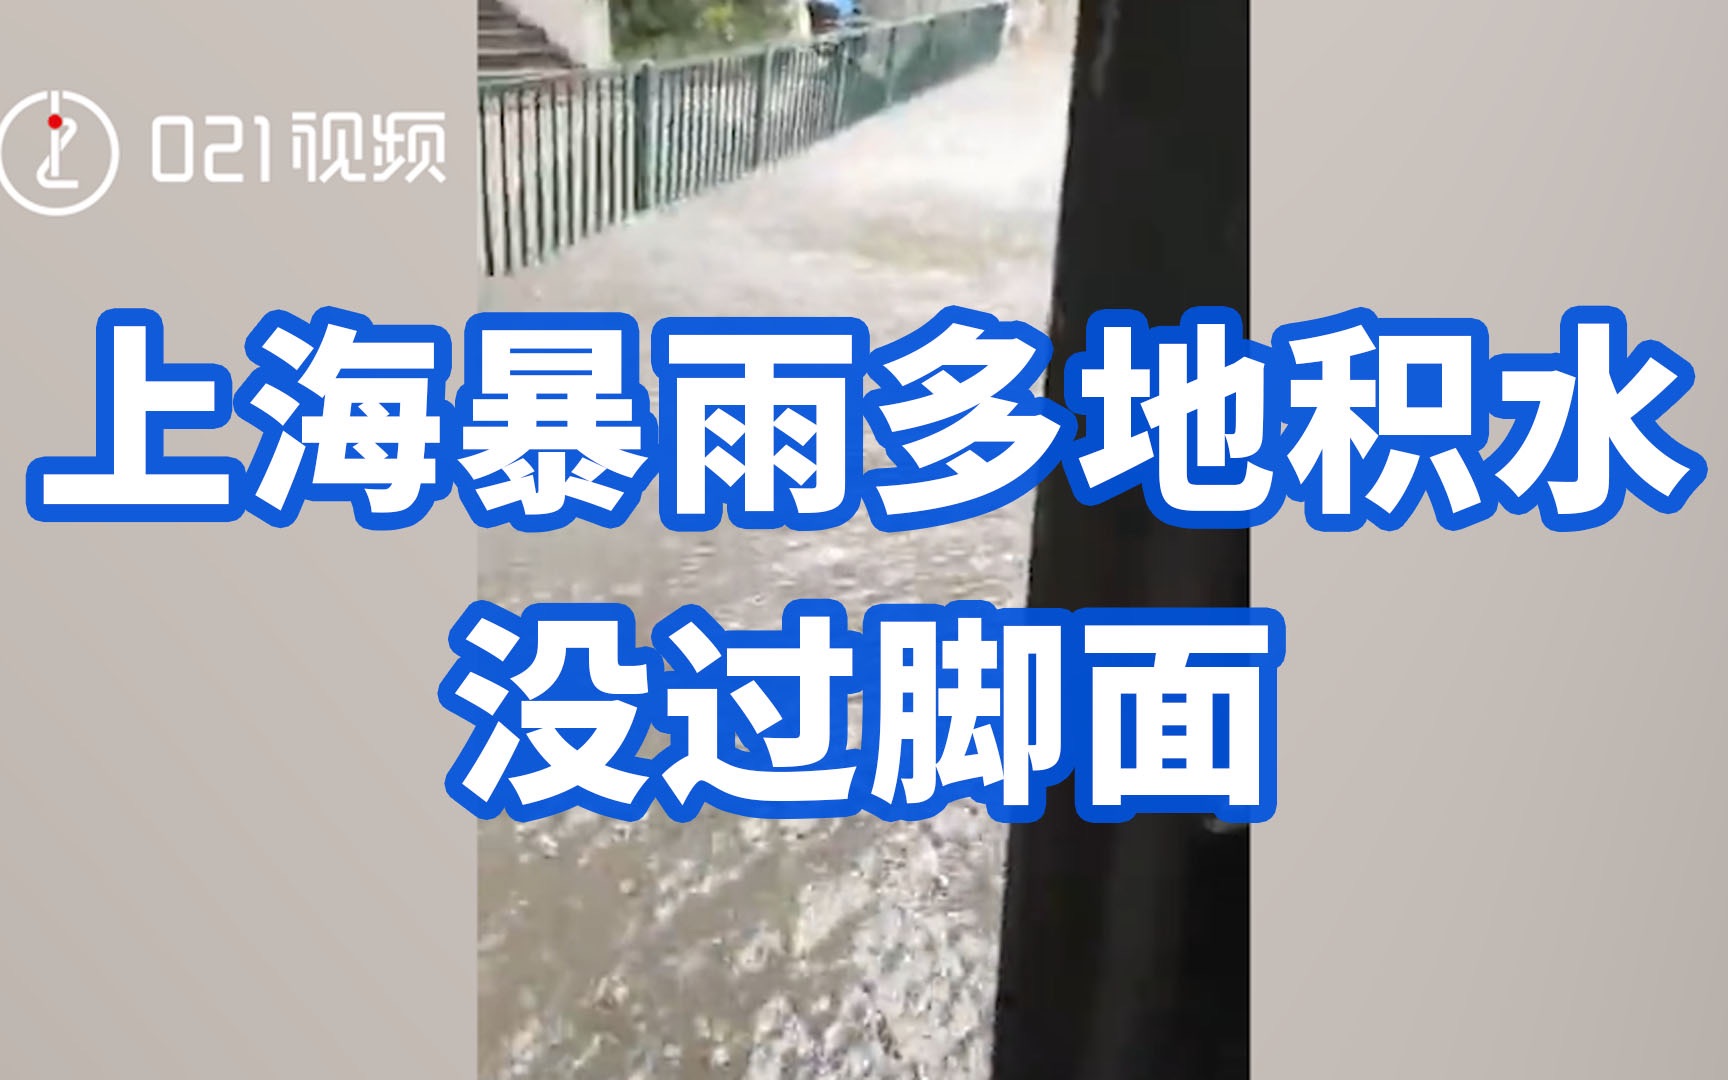 上海遭遇特大暴雨 多地成看海模式 | 上海暴雨 | 瀑布 | 三峽 | 大紀元